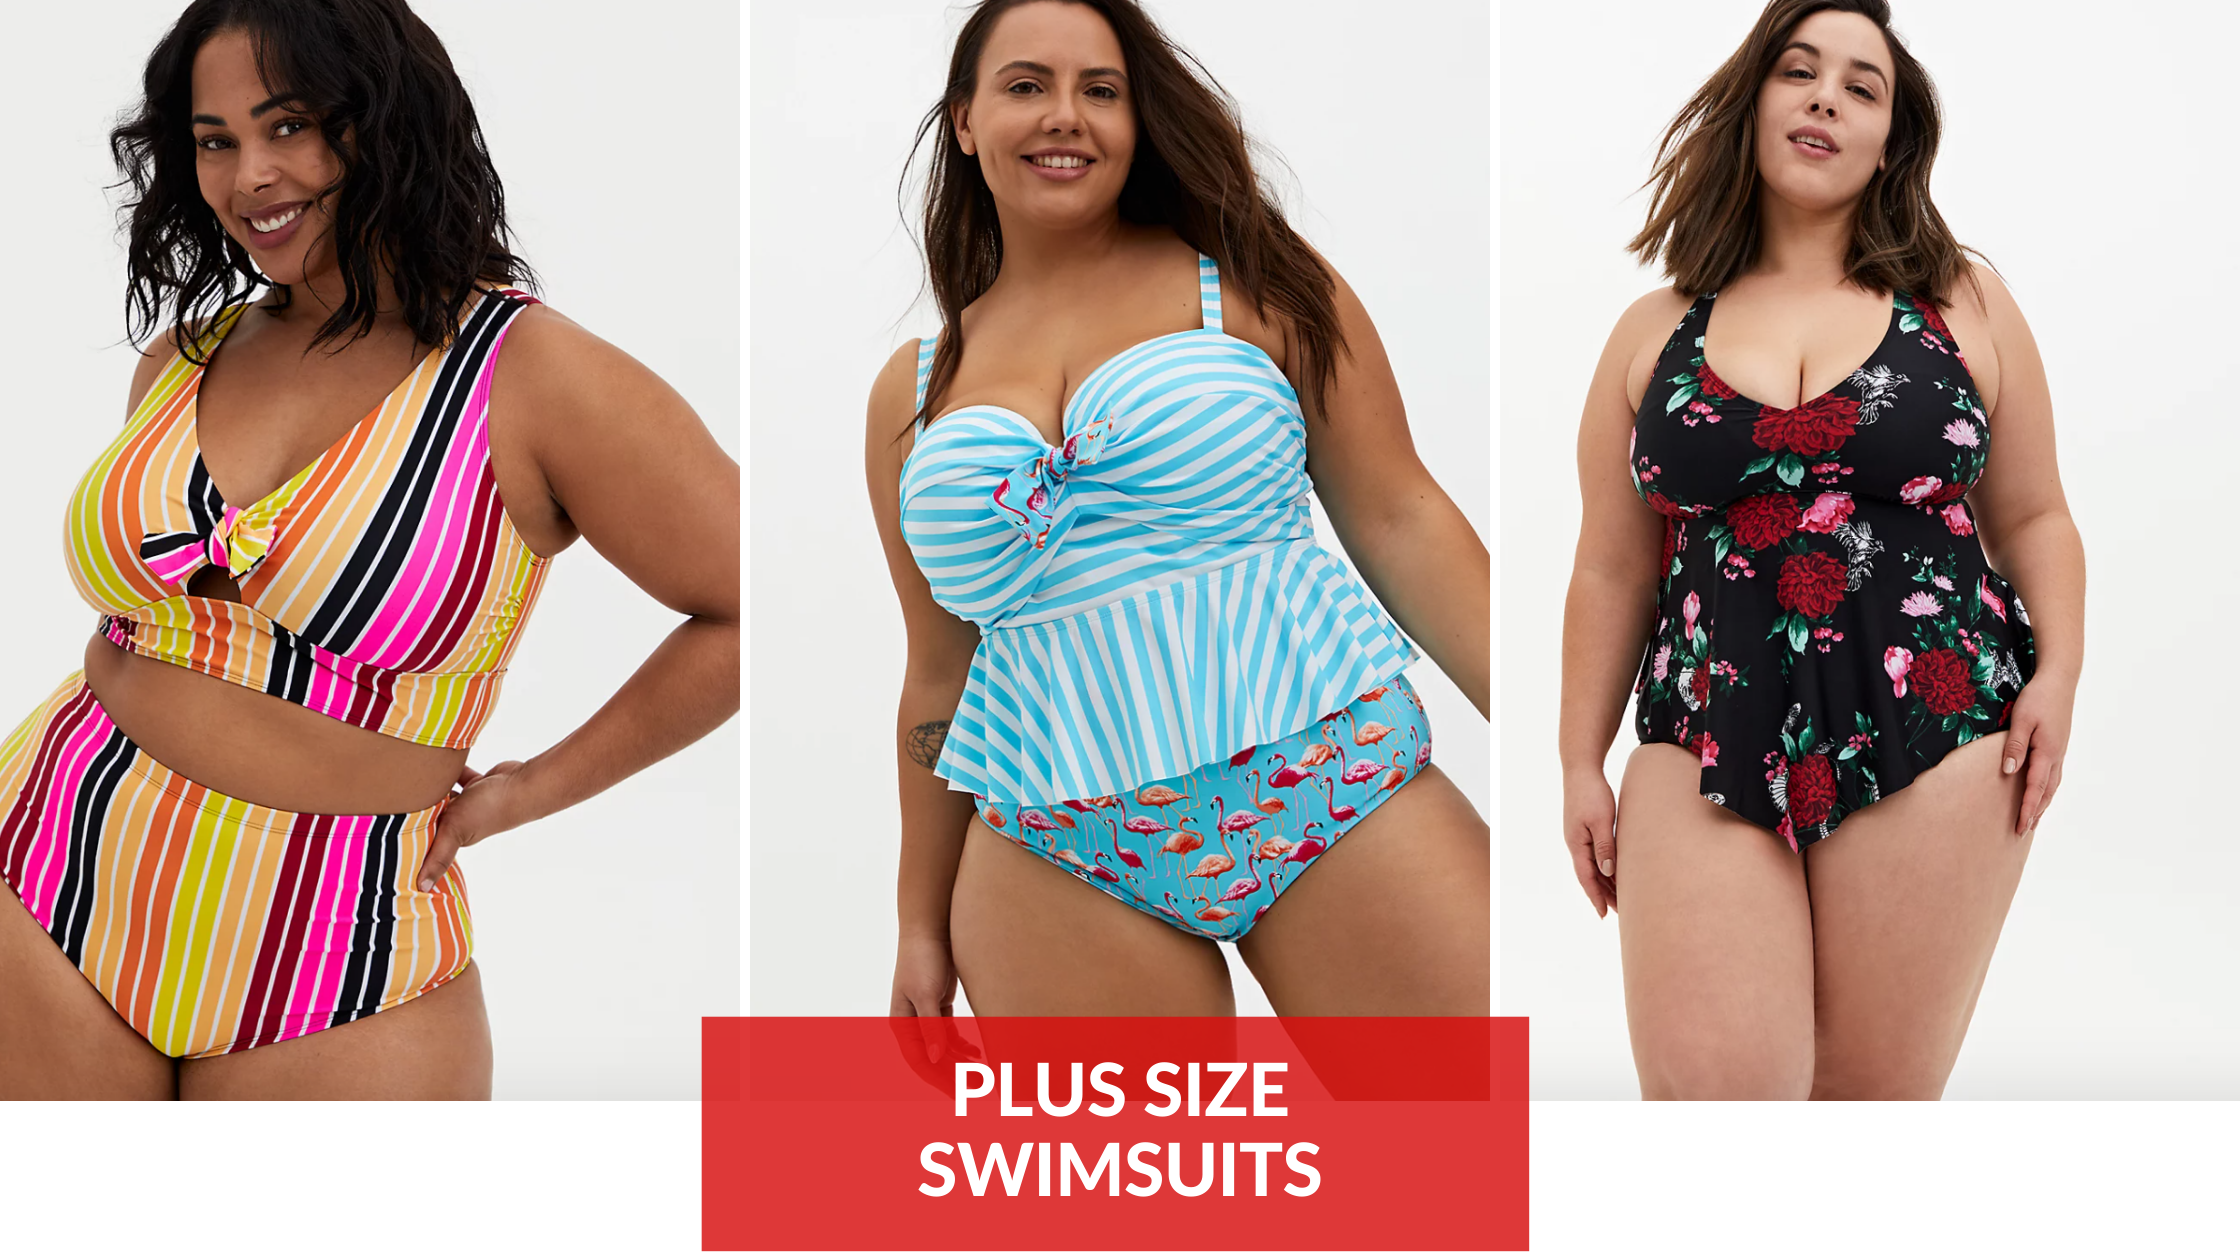 20+ BEST Plus Size Swimsuit Brands